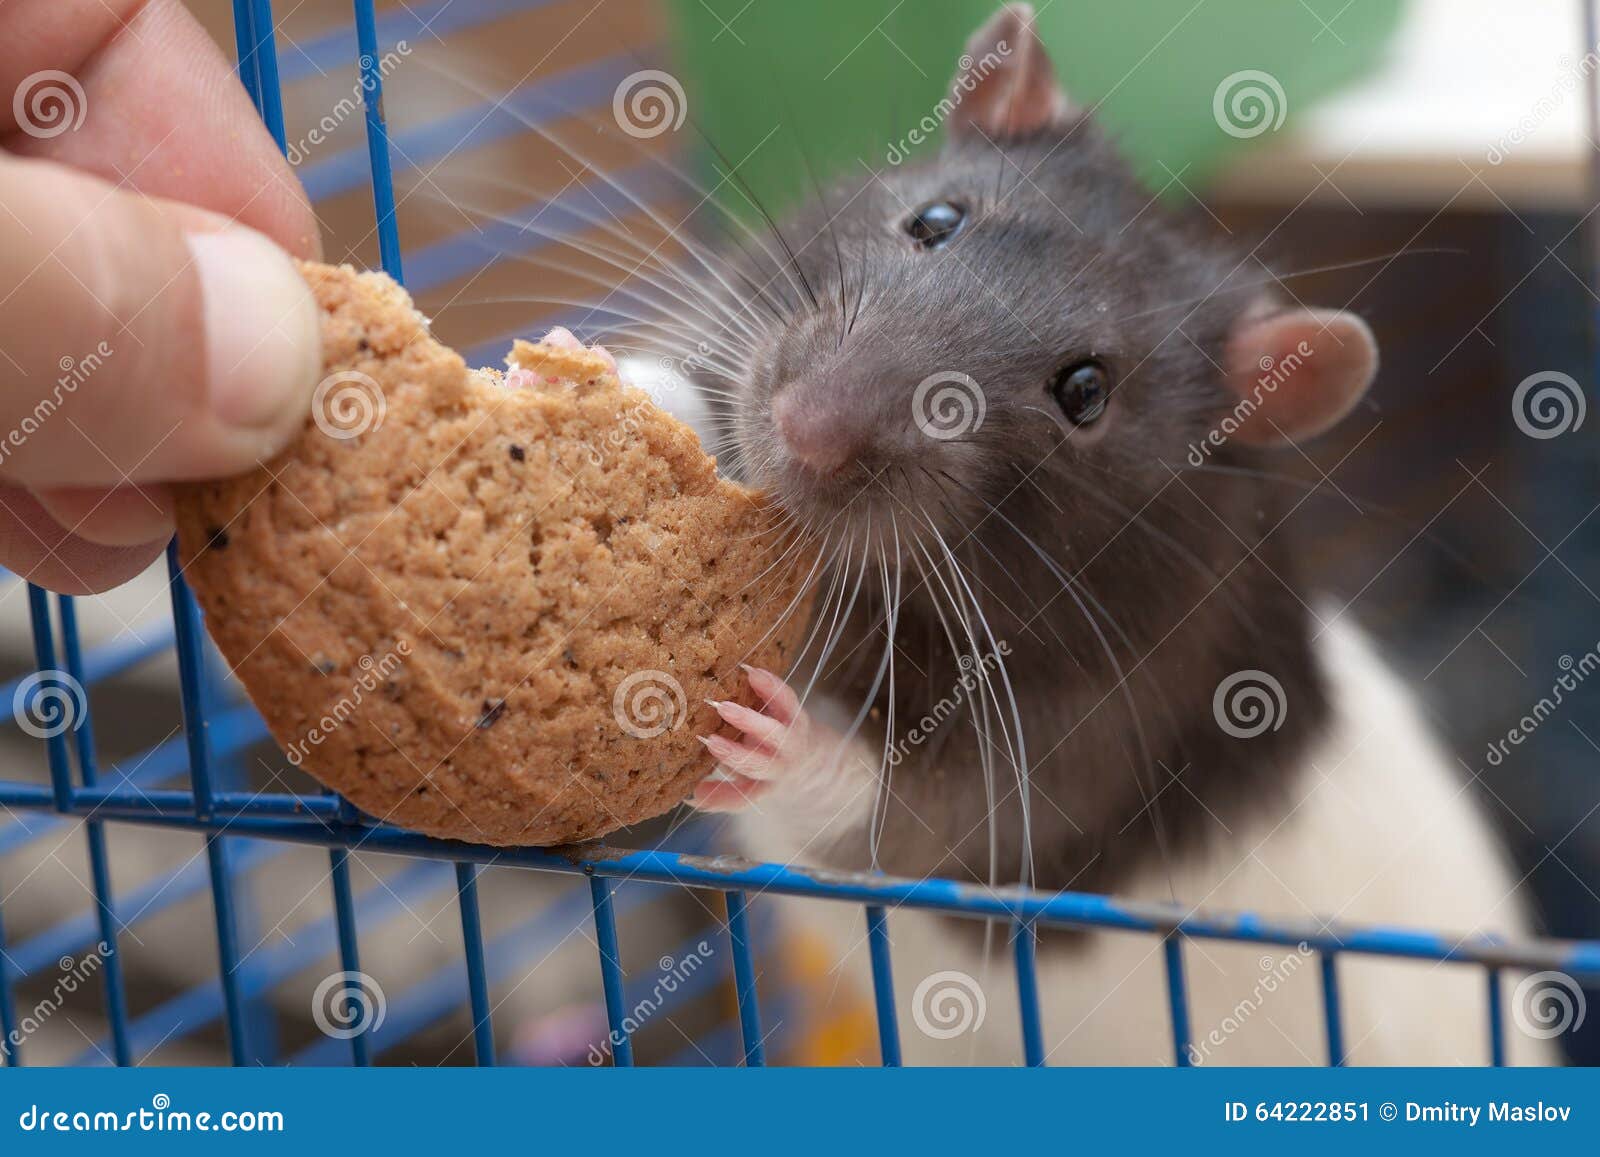 Можно крысам вареное яйцо. Крыса ест печенье. Крыска с печеньем. Крыса и печенька. Крыска с печенькой.